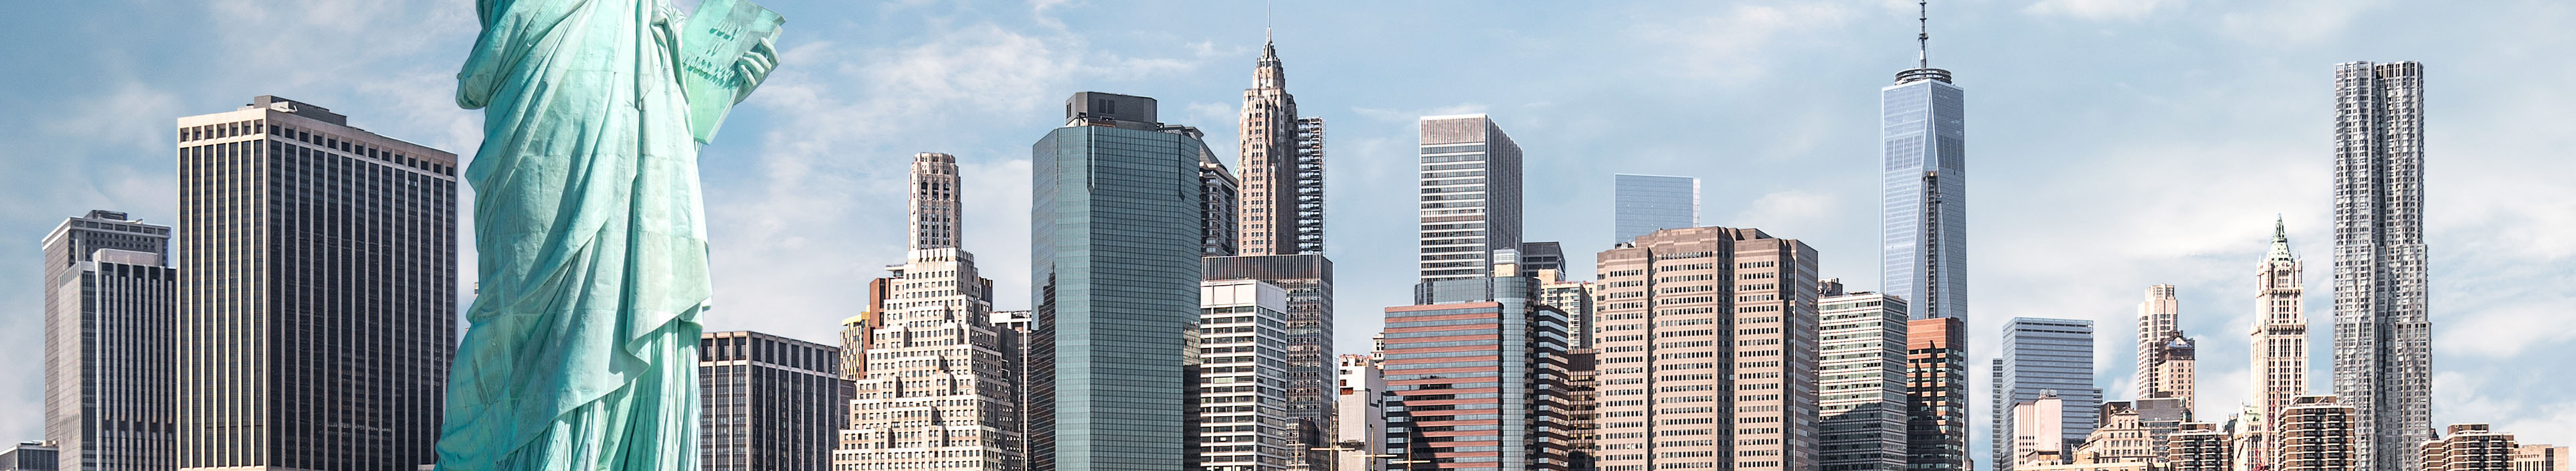 Freiheitsstatue und Blick auf Manhattan in New York